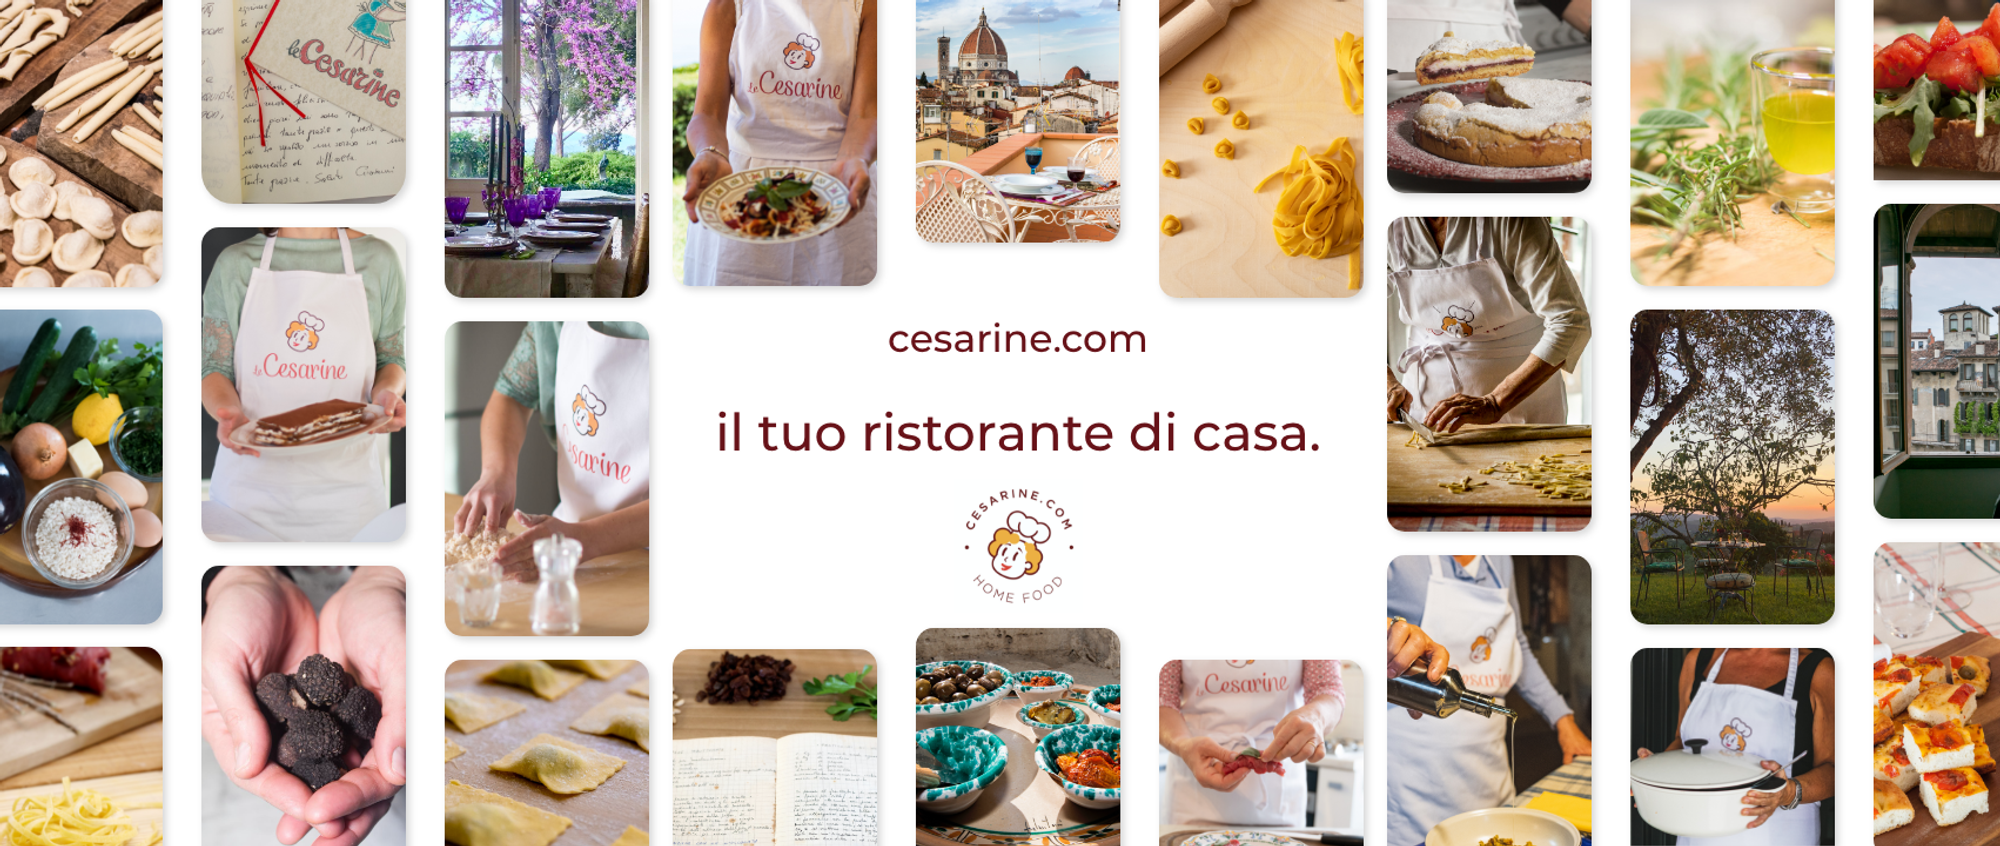 CESARINE TV | Cesarine